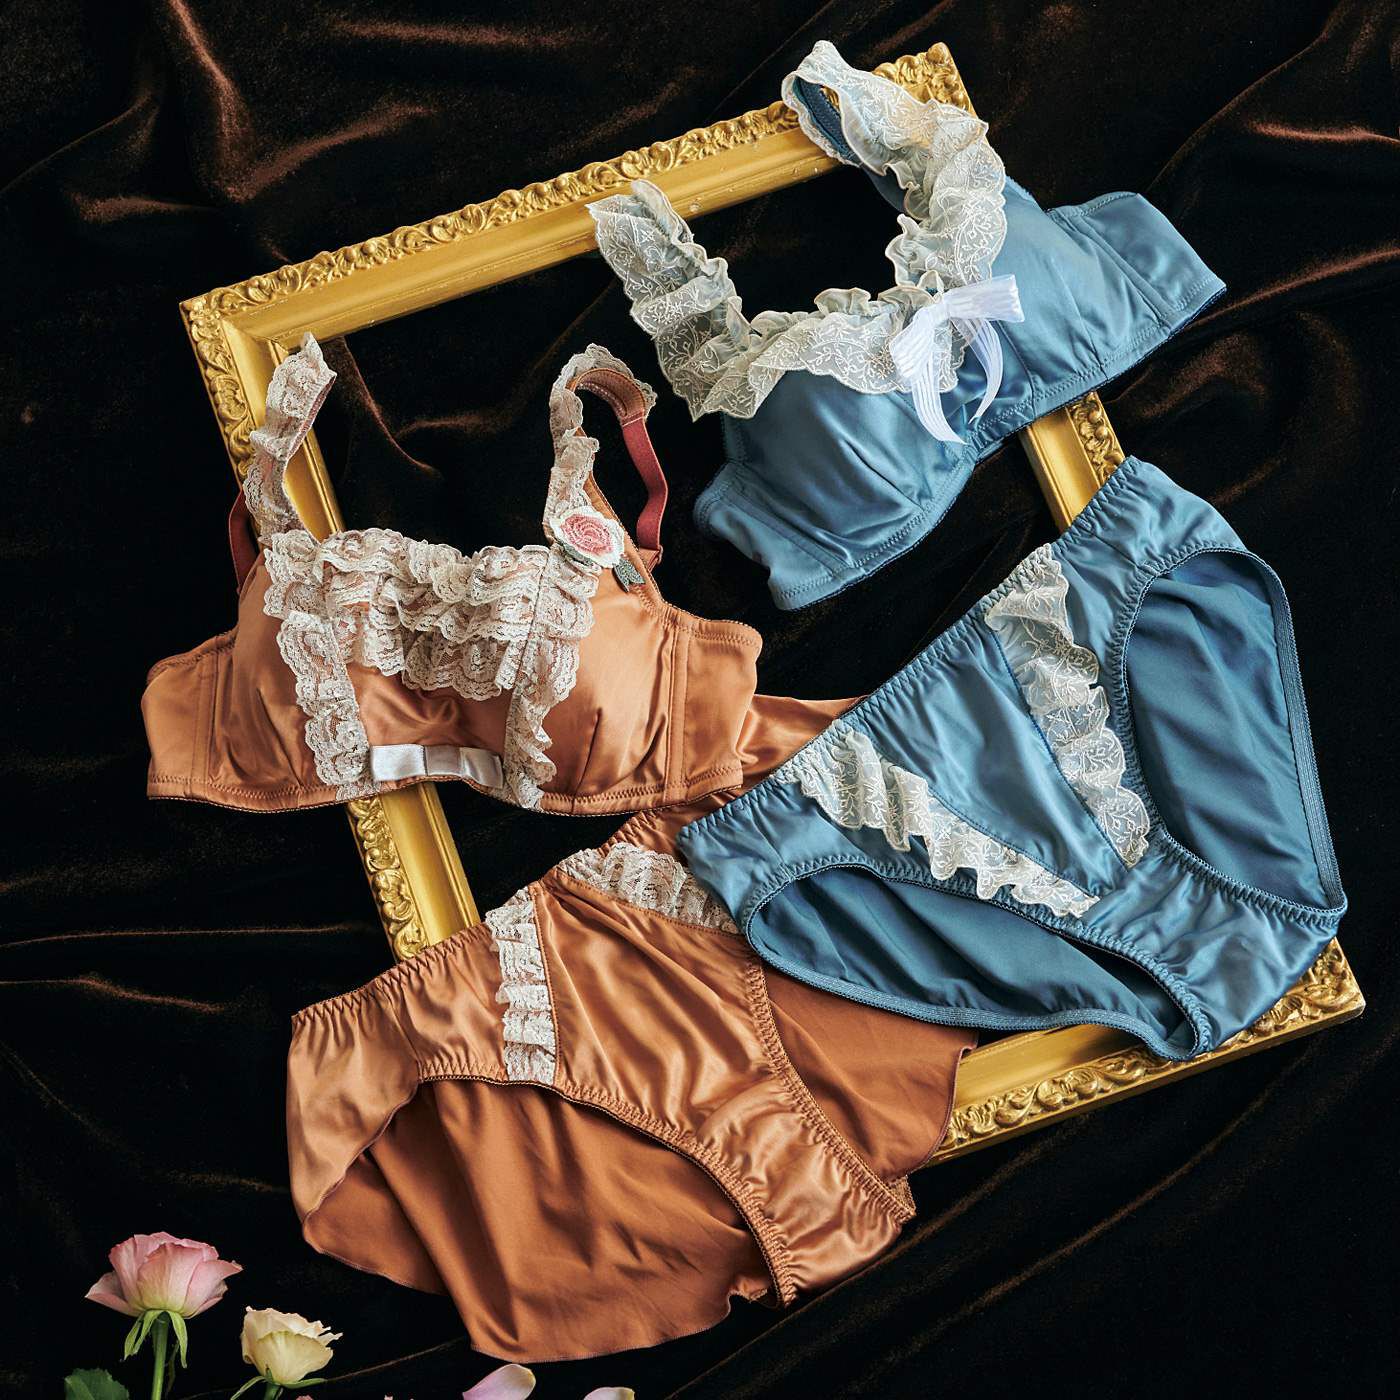 flufeel|flufeel×ミュージアム部　ロココ時代の名画を体験　ポンパドゥール夫人のドレスをイメージしたブラ＆ショーツ|ブラジャーのカップや補整力はそのままに、マリー・アントワネットをイメージしたブラ＆ショーツもご用意しています。